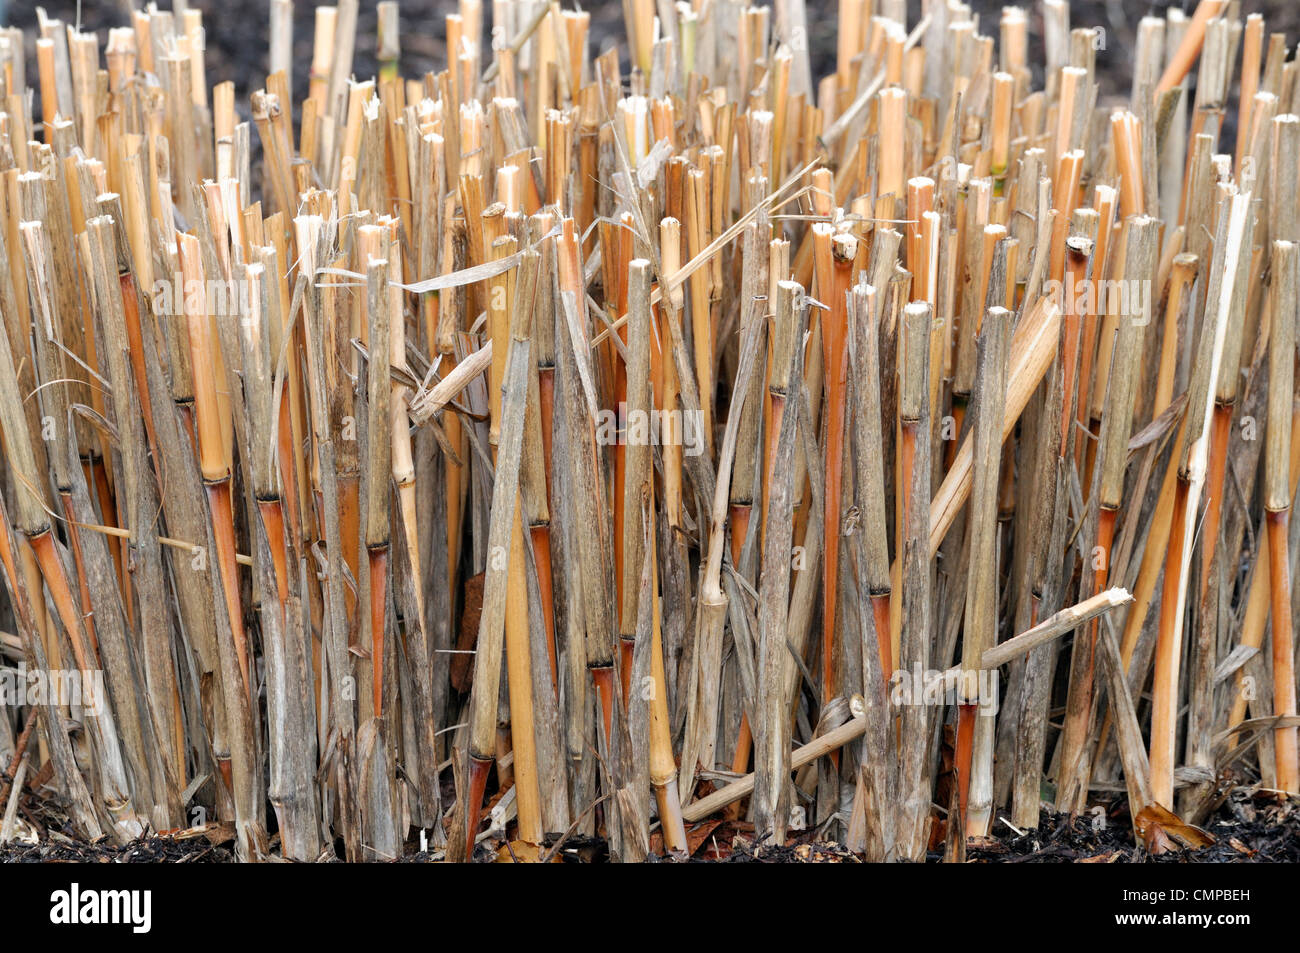 Miscanthus braunen Stängel schneiden wieder Frühjahr winterharte mehrjährige krautige Rasen architektonische strukturelle Ziergarten Gräser Stockfoto